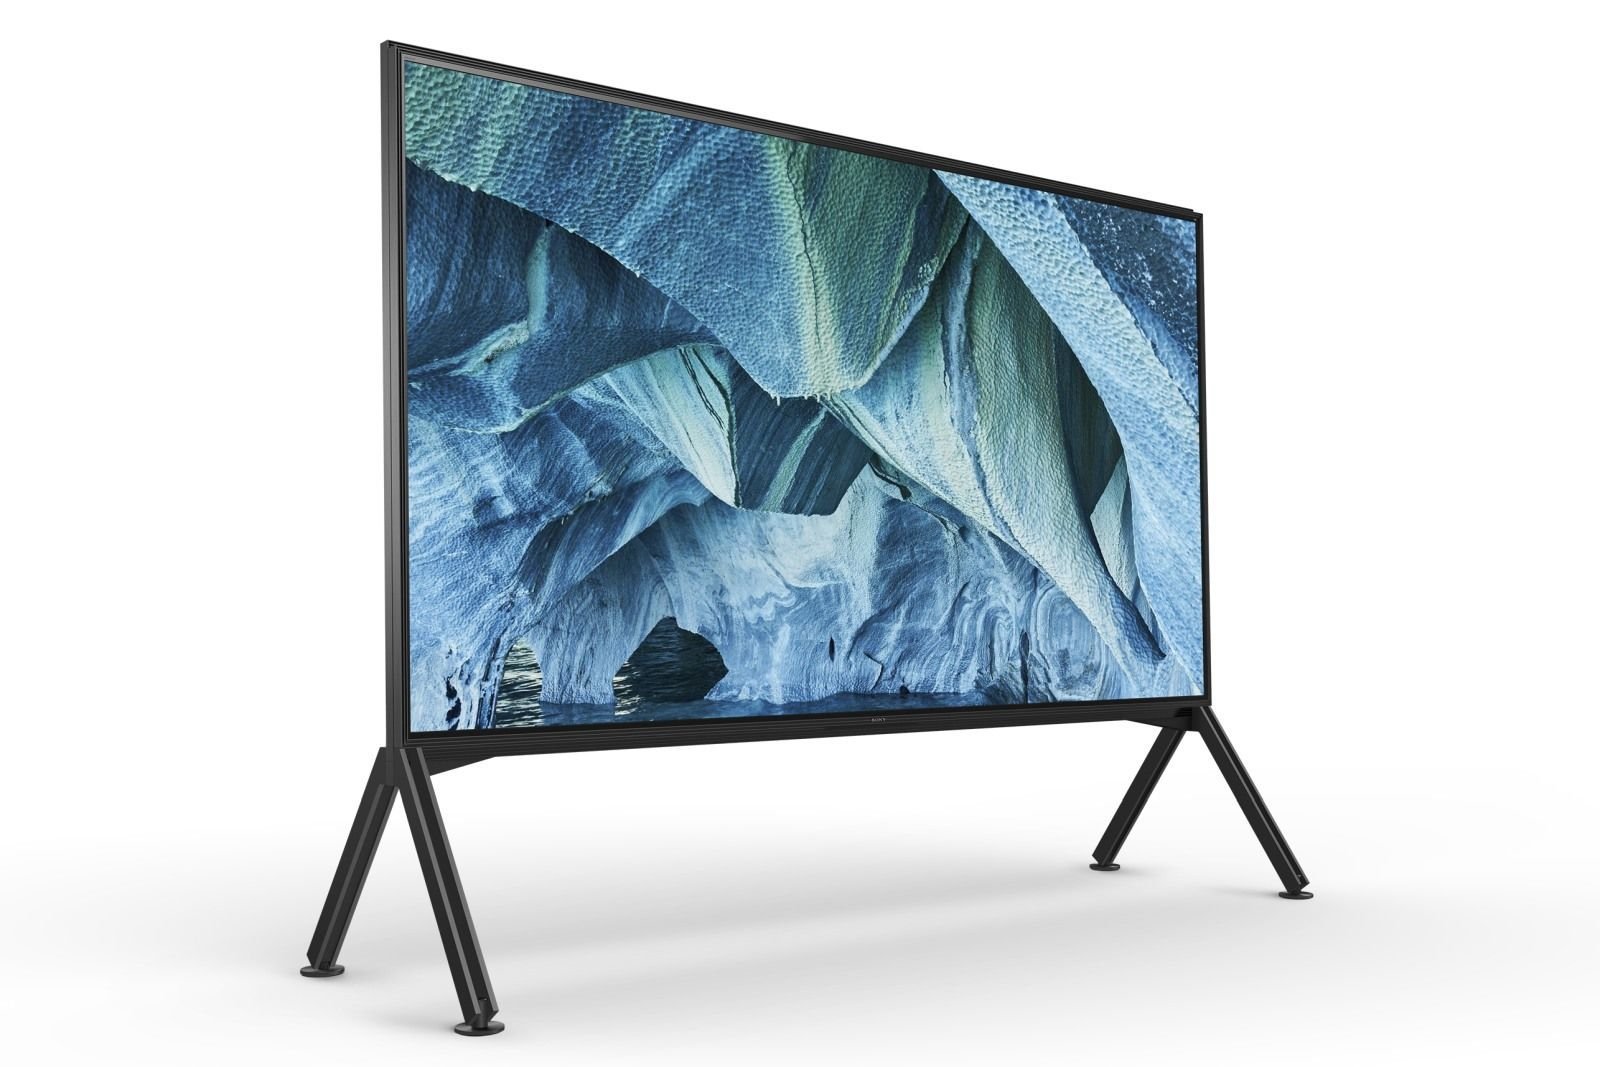 سوني تكشف عن أسعار أجهزة تلفاز 2019 يتصدرها ماستر Z9G قياس 98 بوصة بسعر 70,000$ 